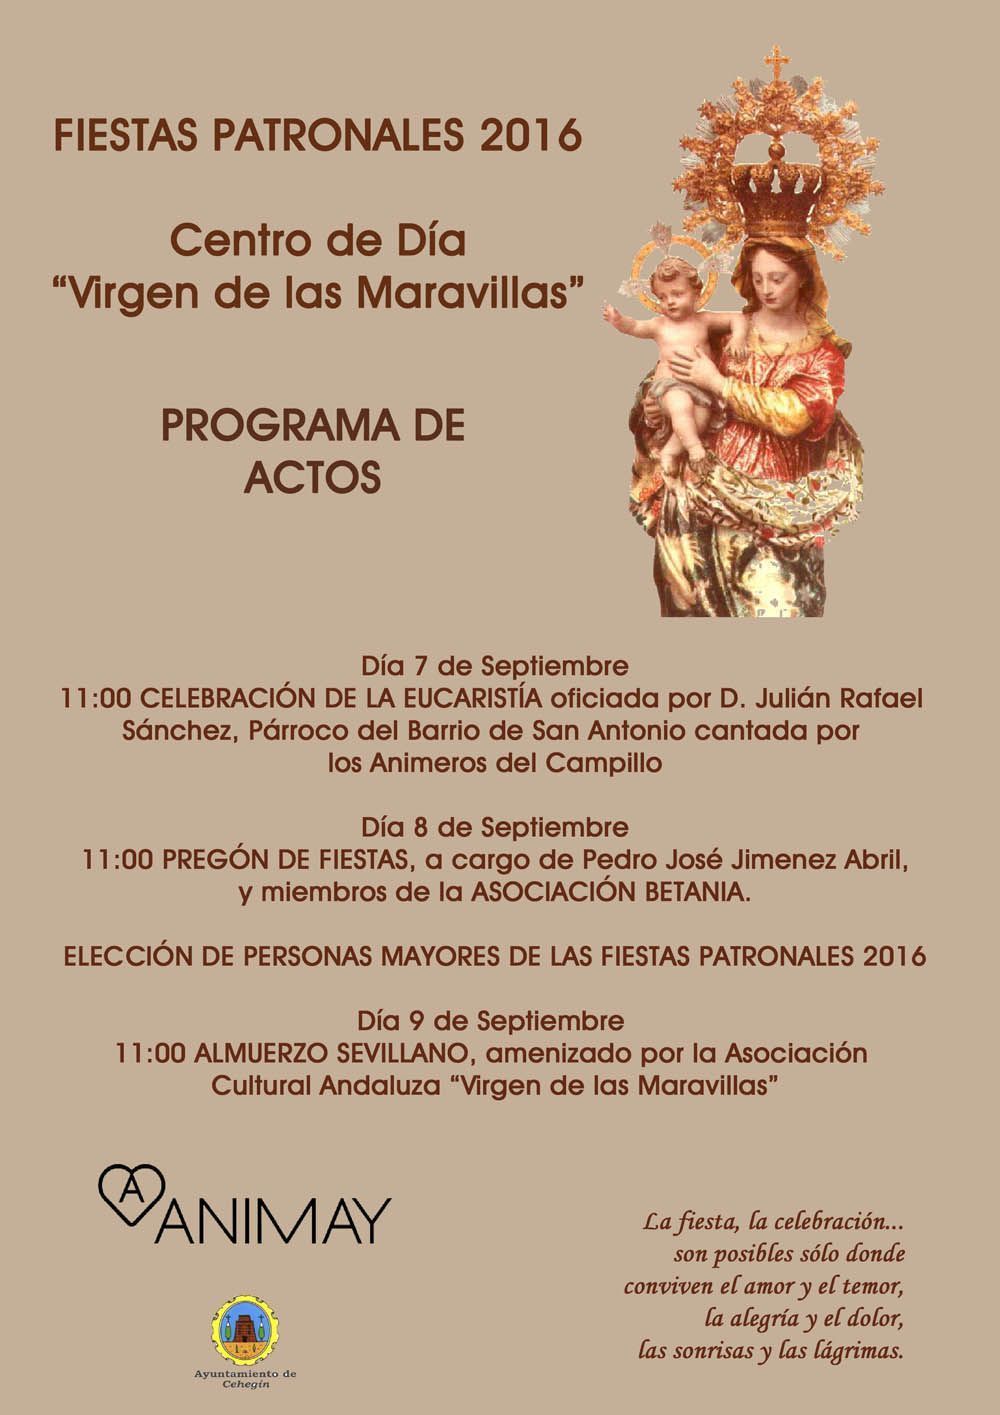 El centro de día “Virgen de las Maravillas” de Cehegín celebra las fiestas desde el encuentro entre la vulnerabilidad y la fortaleza humanas